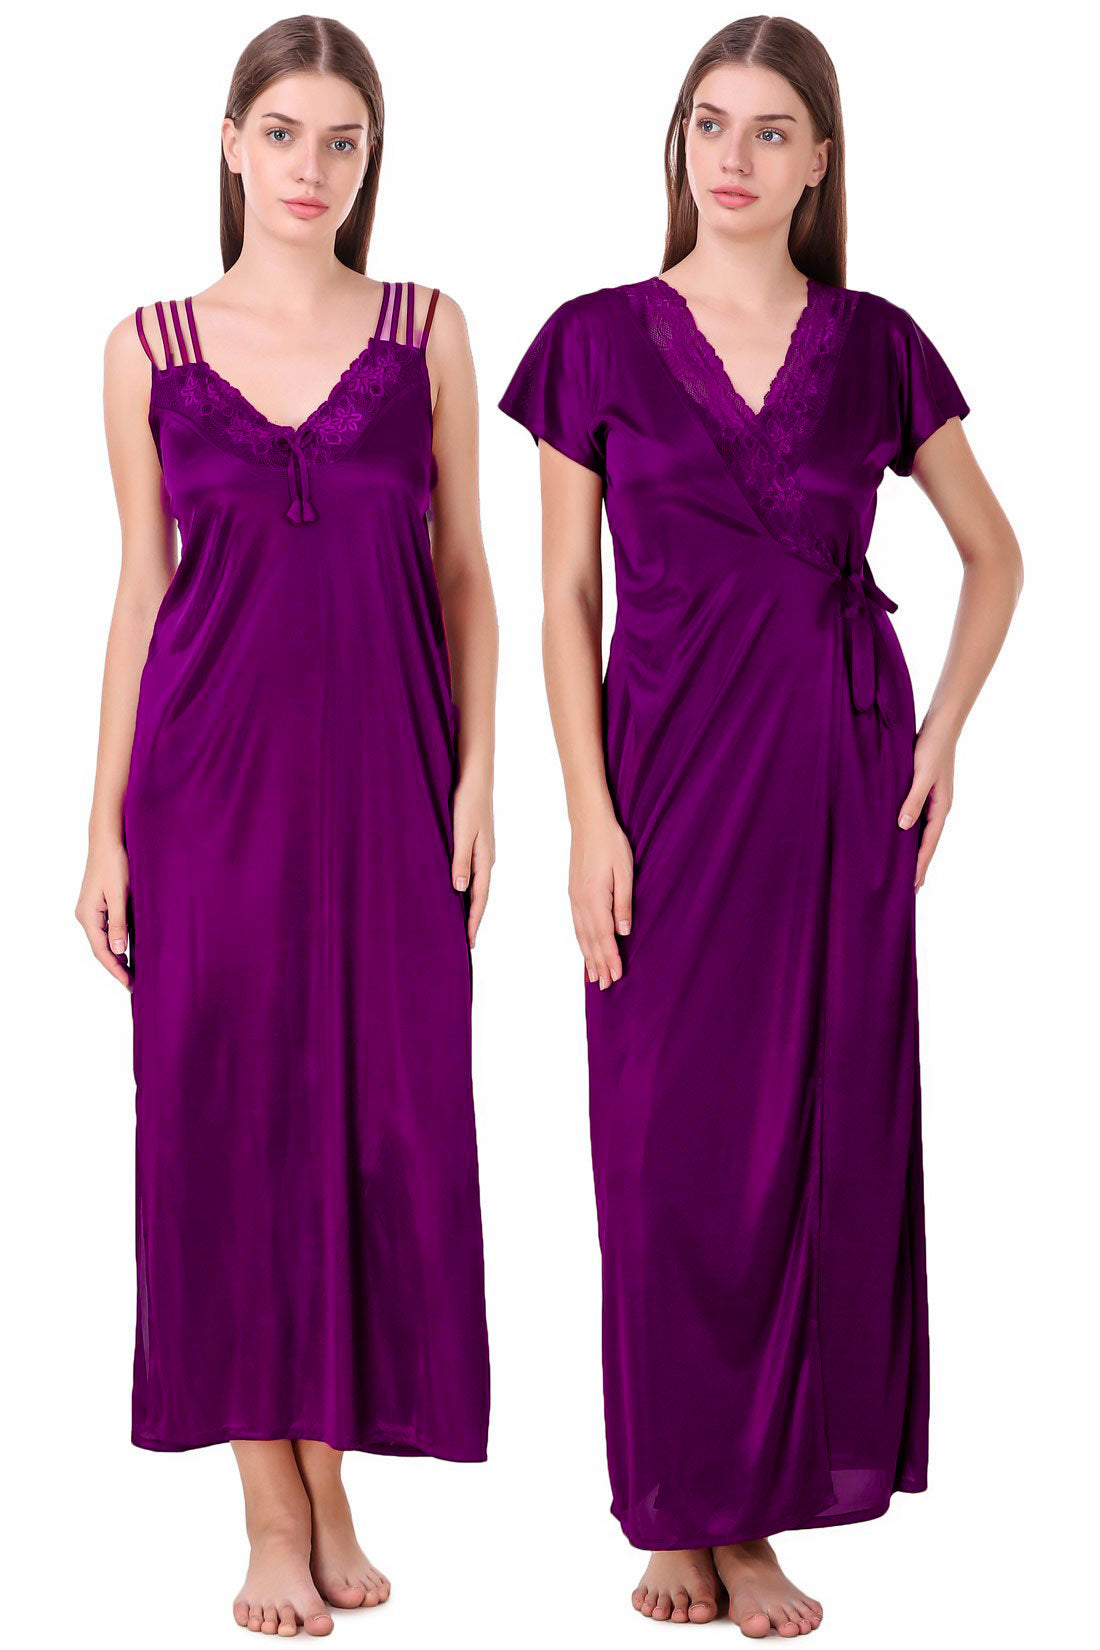 Purple / One Size Chloe Satin Gown Nightwear Set The Orange Tags